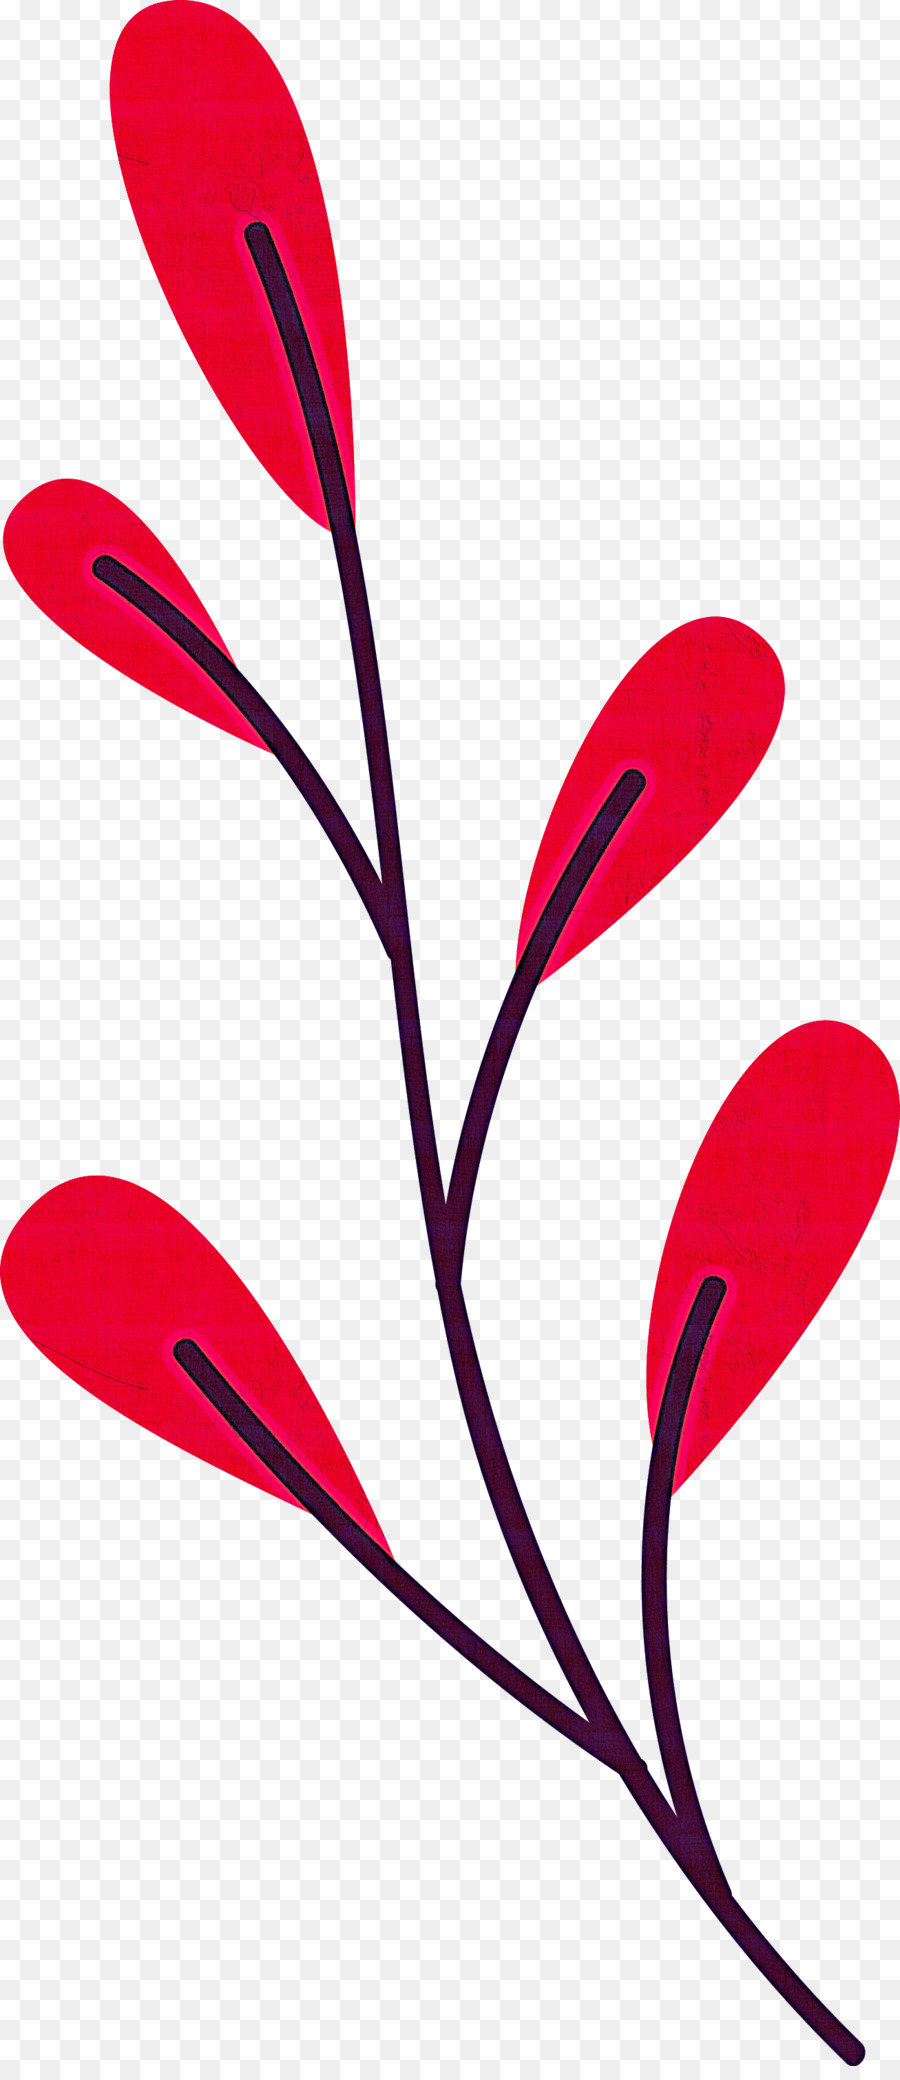 plant stem petal leaf line flower